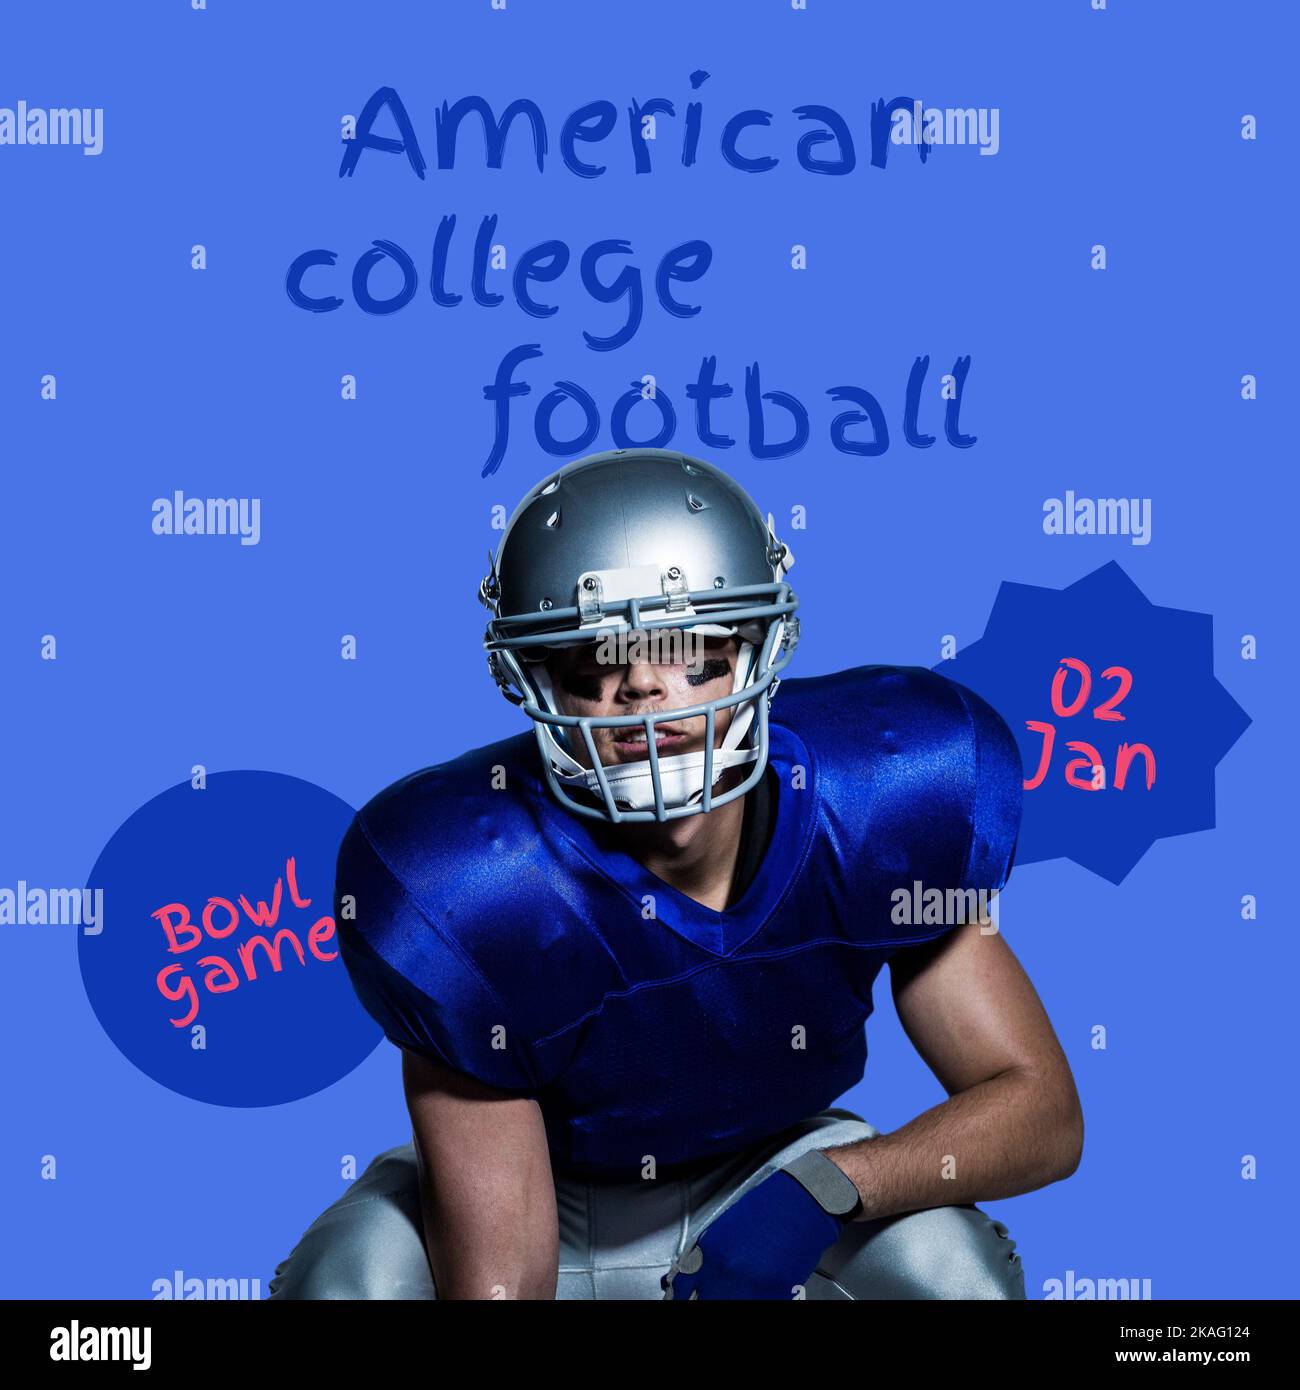 Composición del texto de fútbol americano universitario sobre el jugador de fútbol americano caucásico Foto de stock